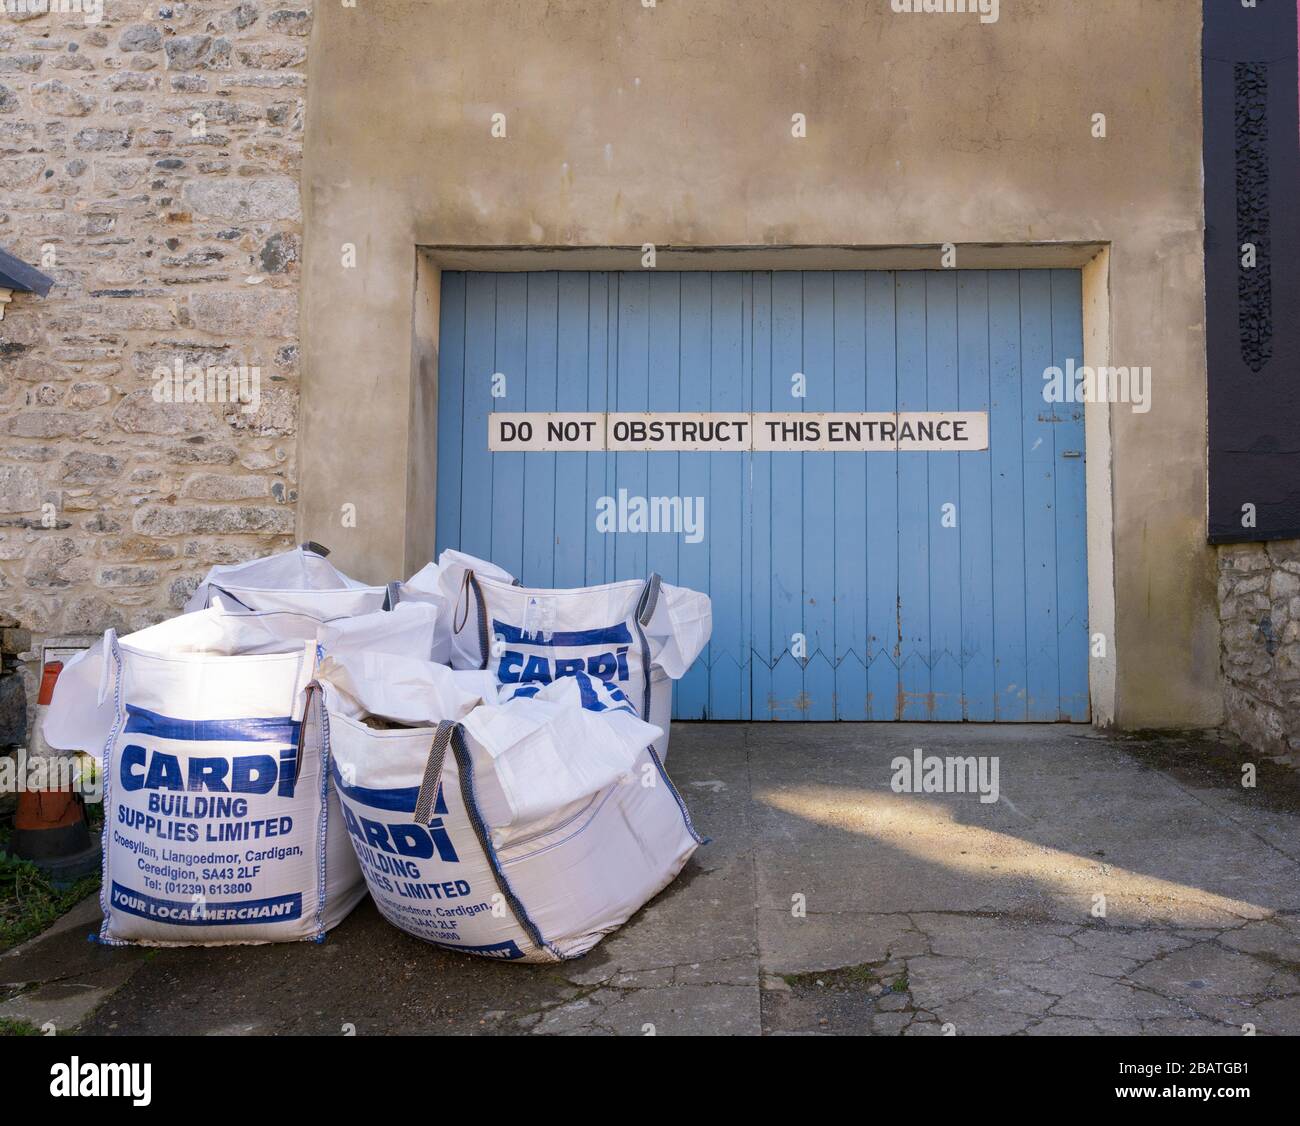 Entrata con cartello che dice 'non ostruire questa entrata' con borse mercantili costruttori che ostruiscono l'entrata. Newport, Pembrokeshire. Galles. REGNO UNITO Foto Stock